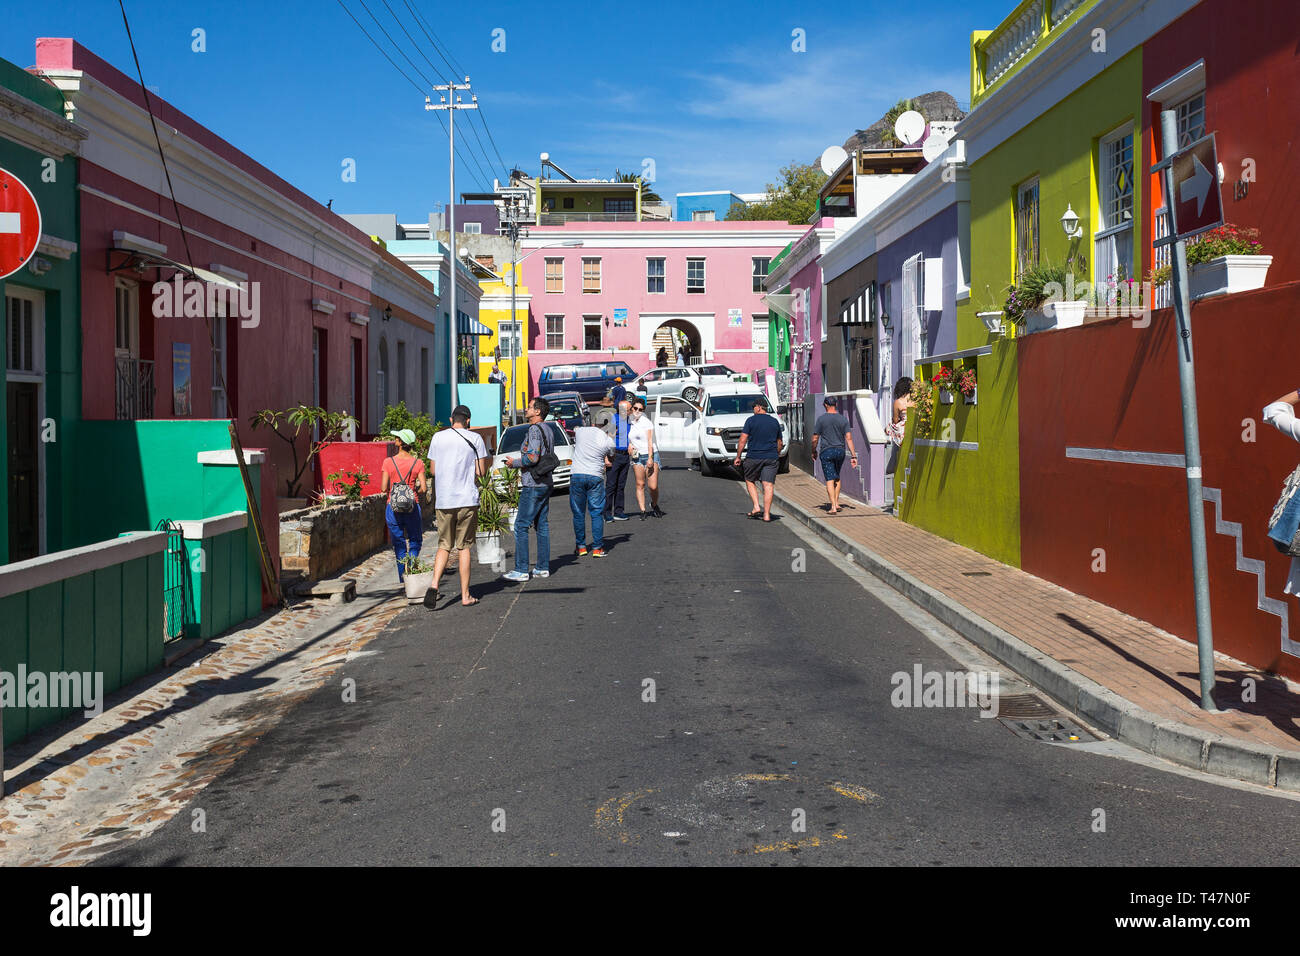 Gruppe oder Menge von Touristen oder Menschen auf der Straße oder auf der Straße außerhalb der bunten Häuser des historischen Wohngebiet von Bo Kaap in Kapstadt Stockfoto